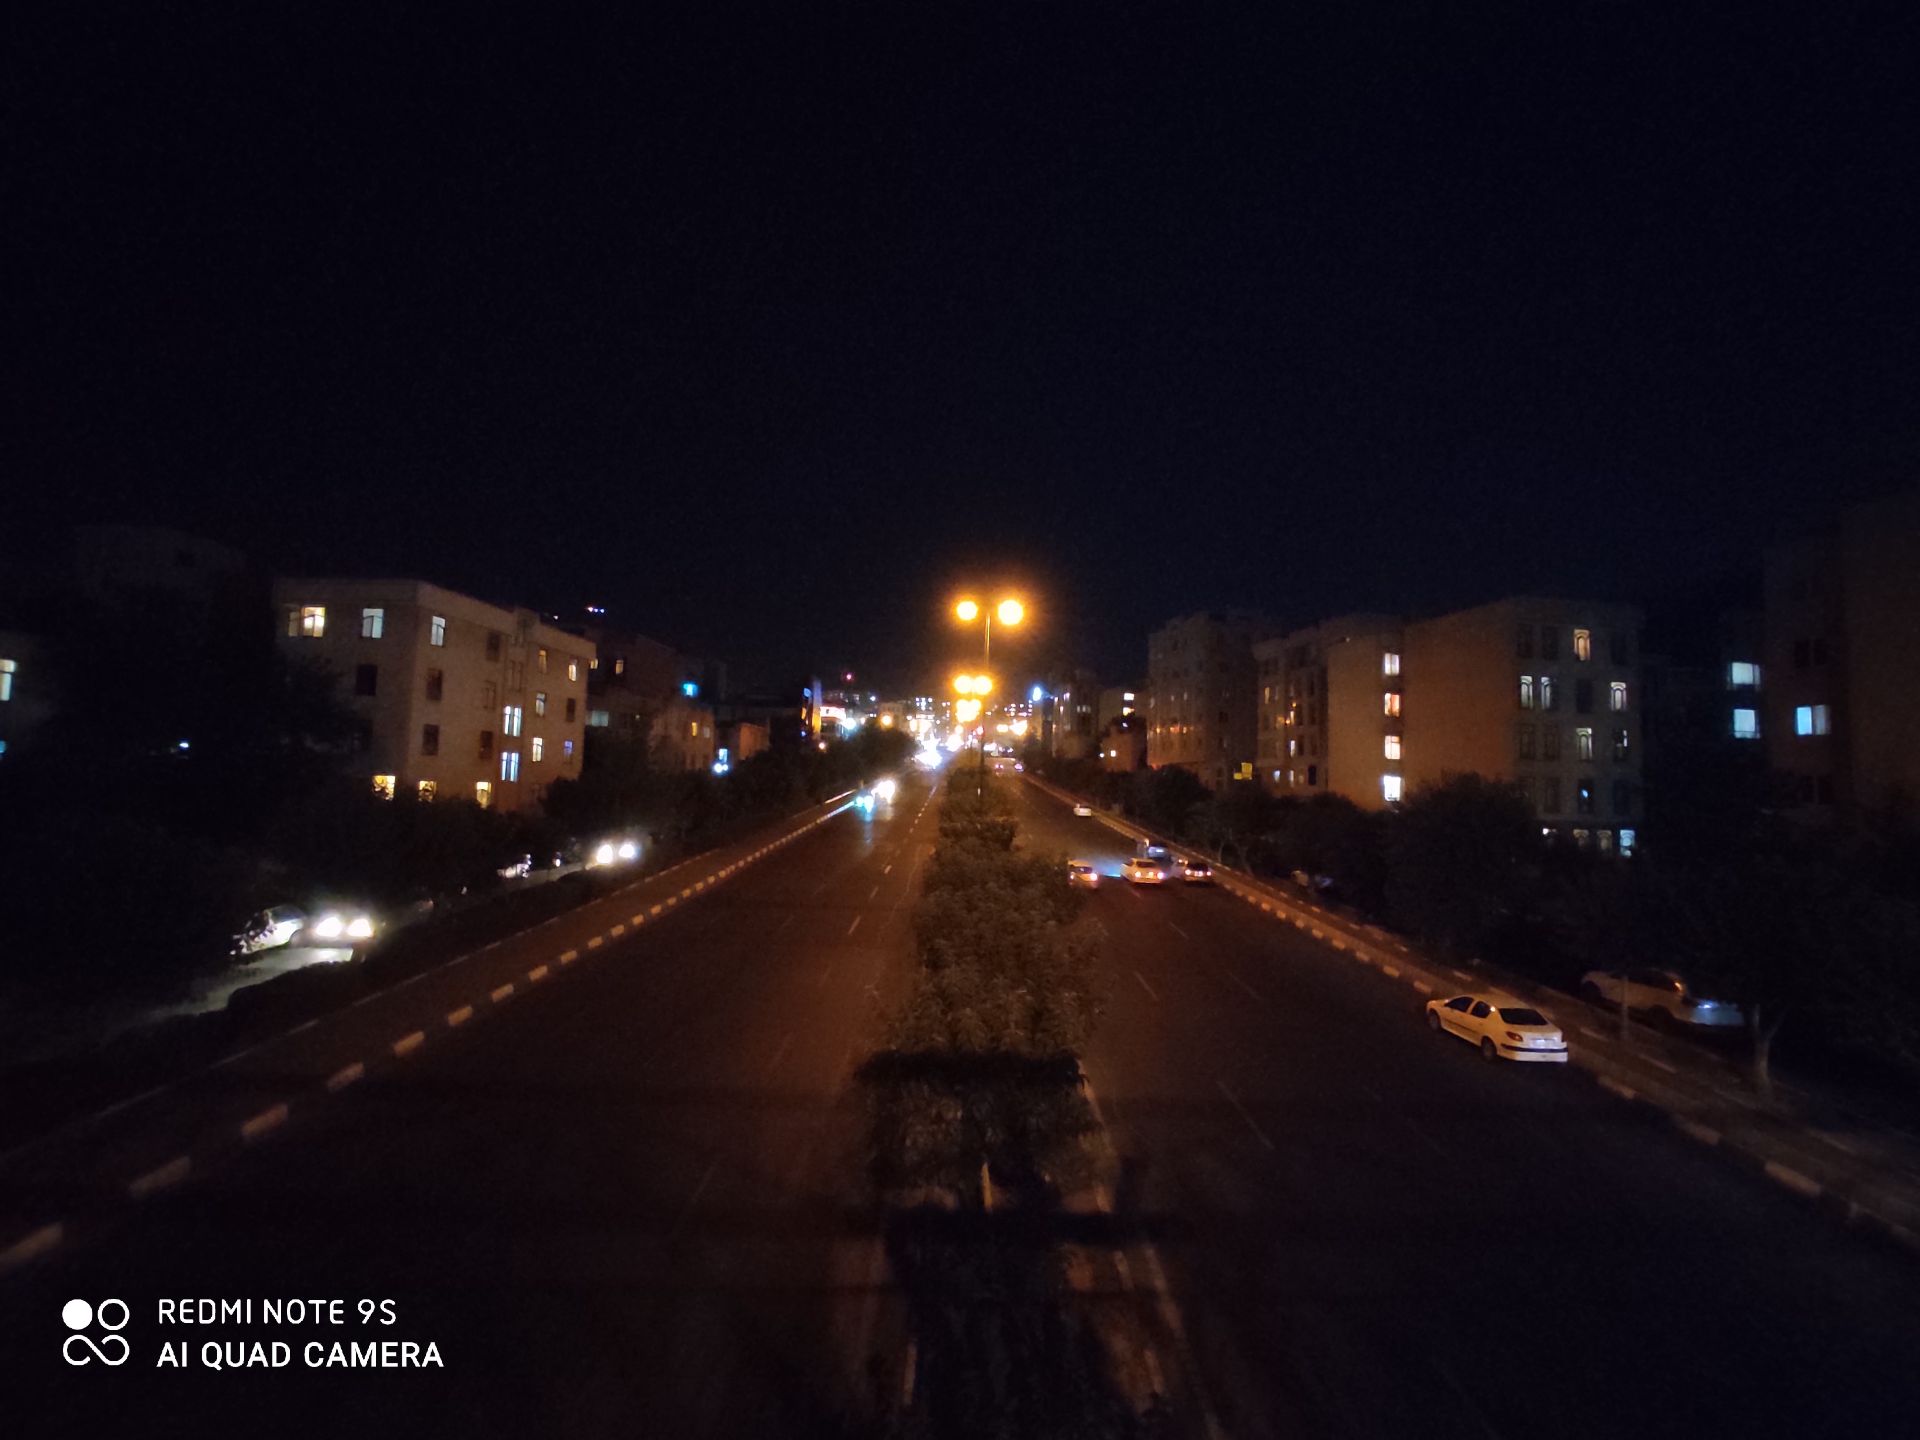 نمونه عکس ردمی نوت 9 اس - اولتراواید - ساختمان و خیابان در تاریکی